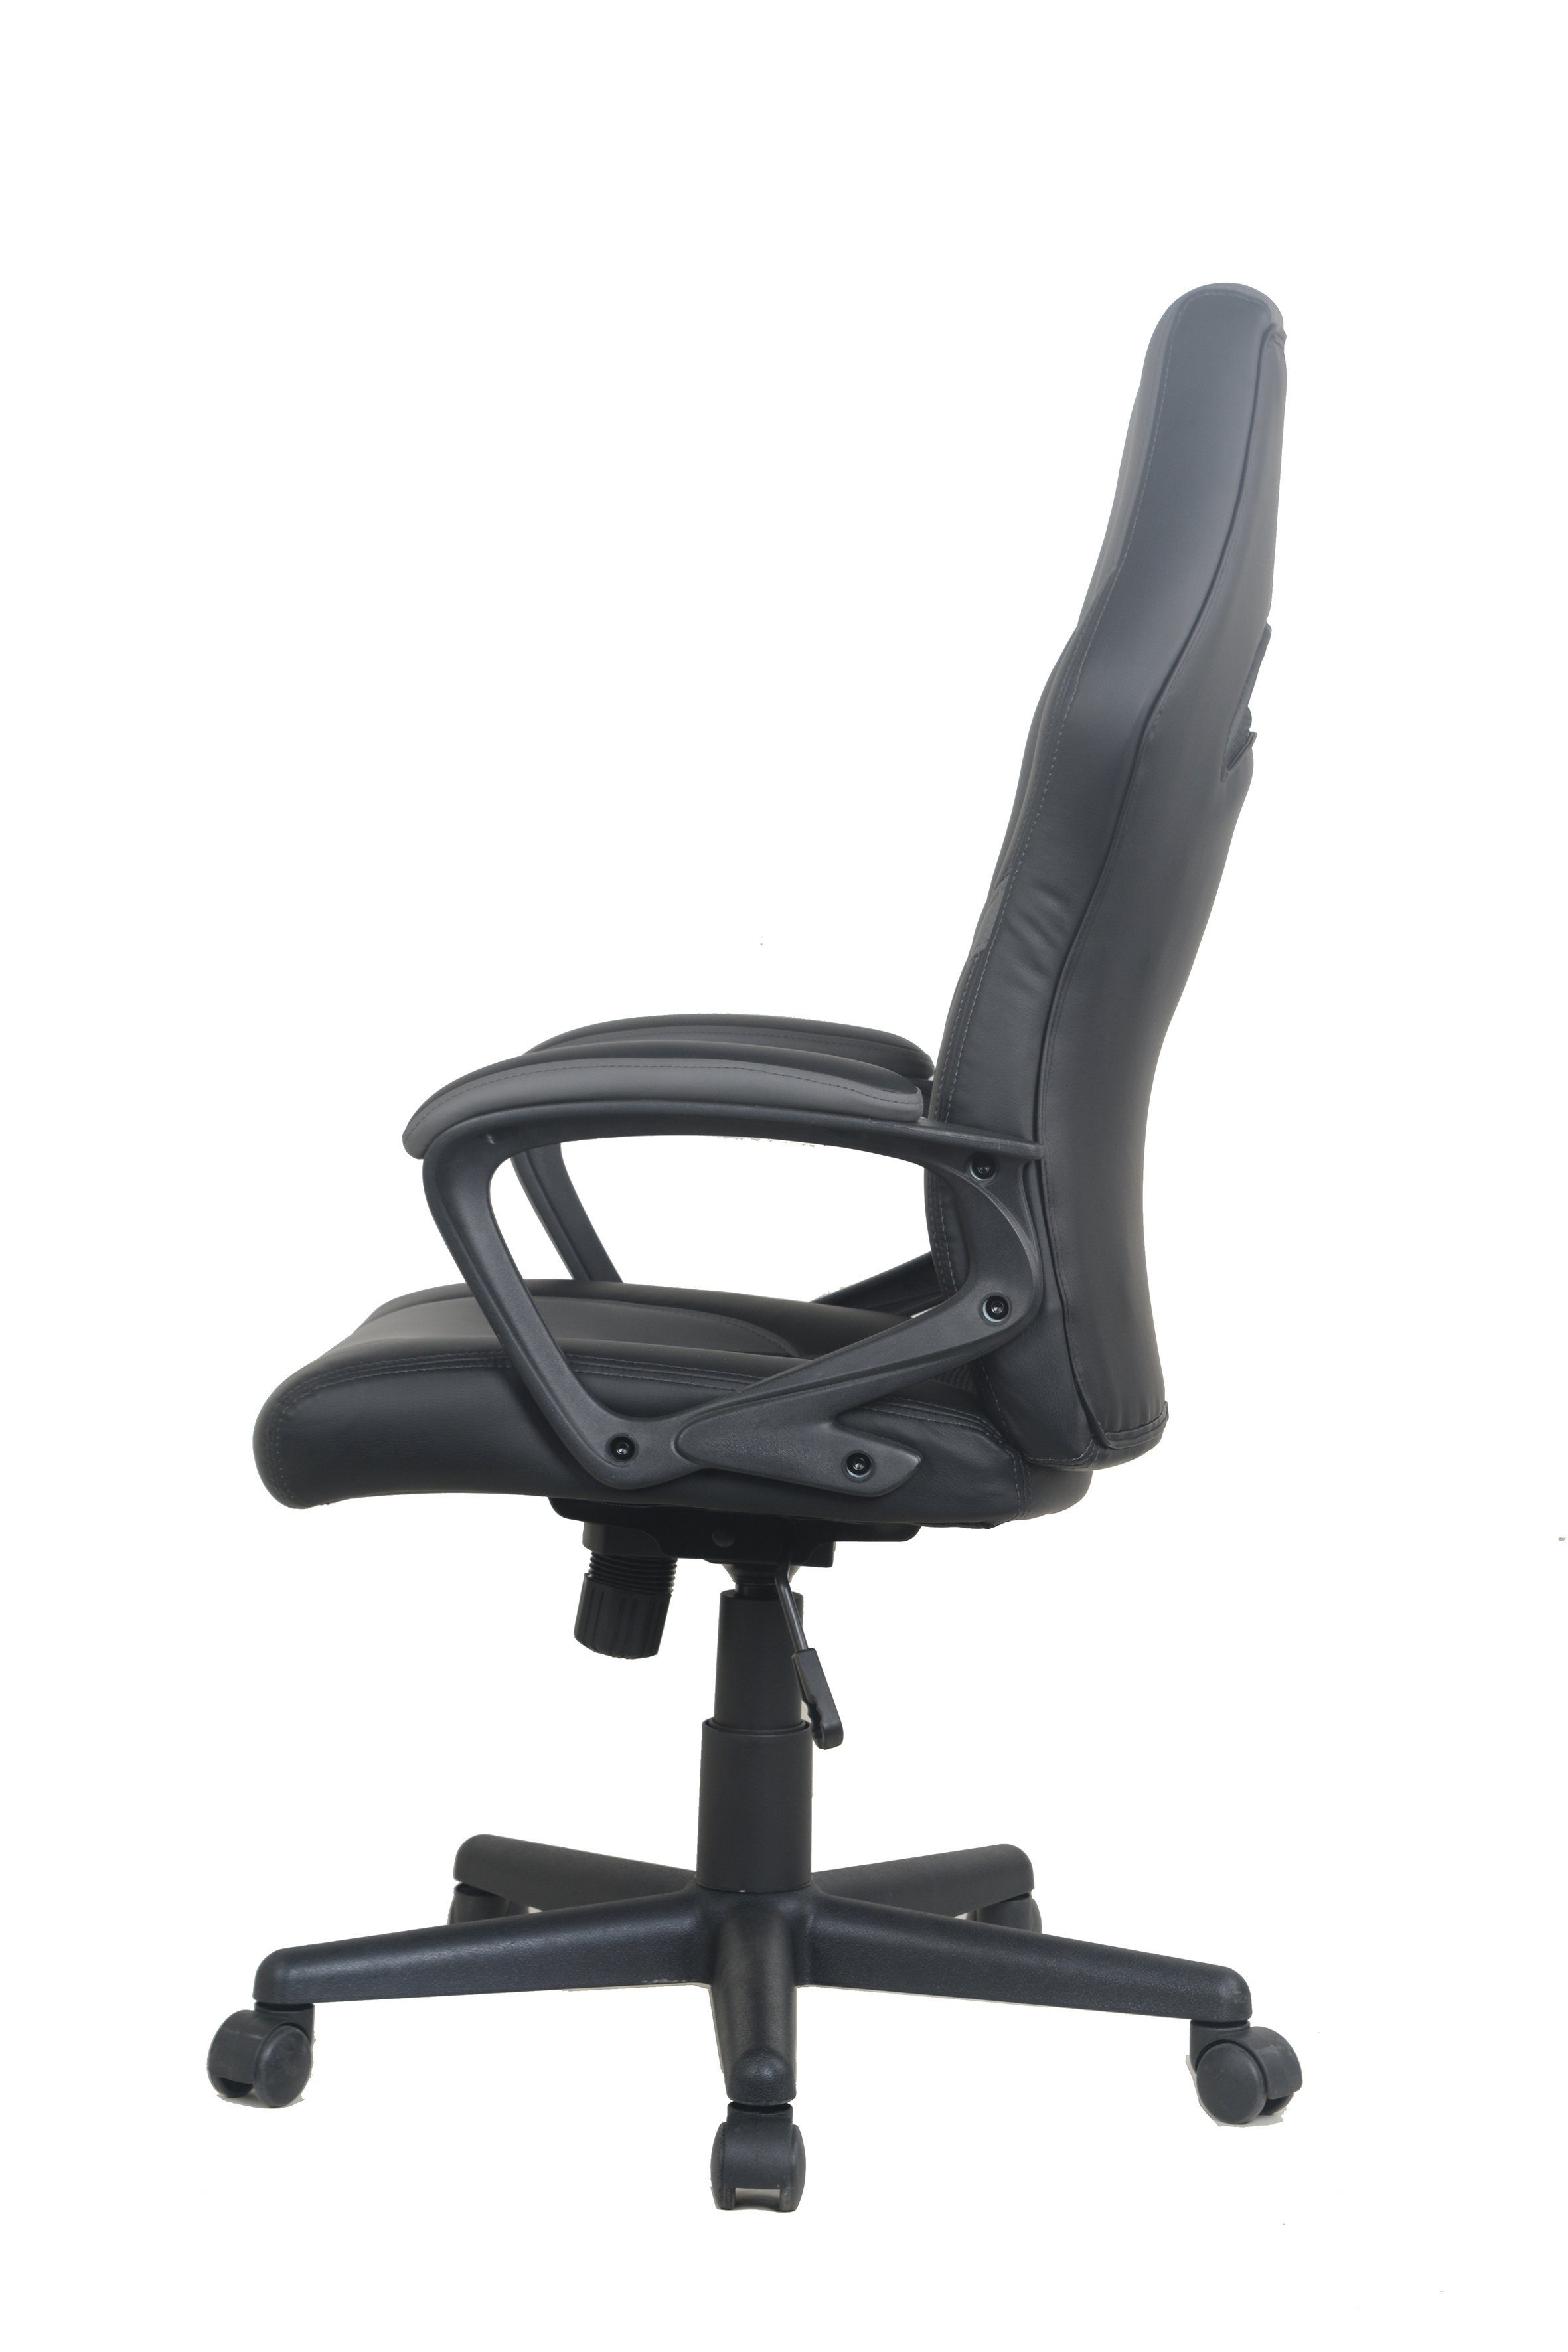 byLIVING Chefsessel schwarz/grau mit Gaming-Stuhl FREEZE, Verstellmöglichkeiten